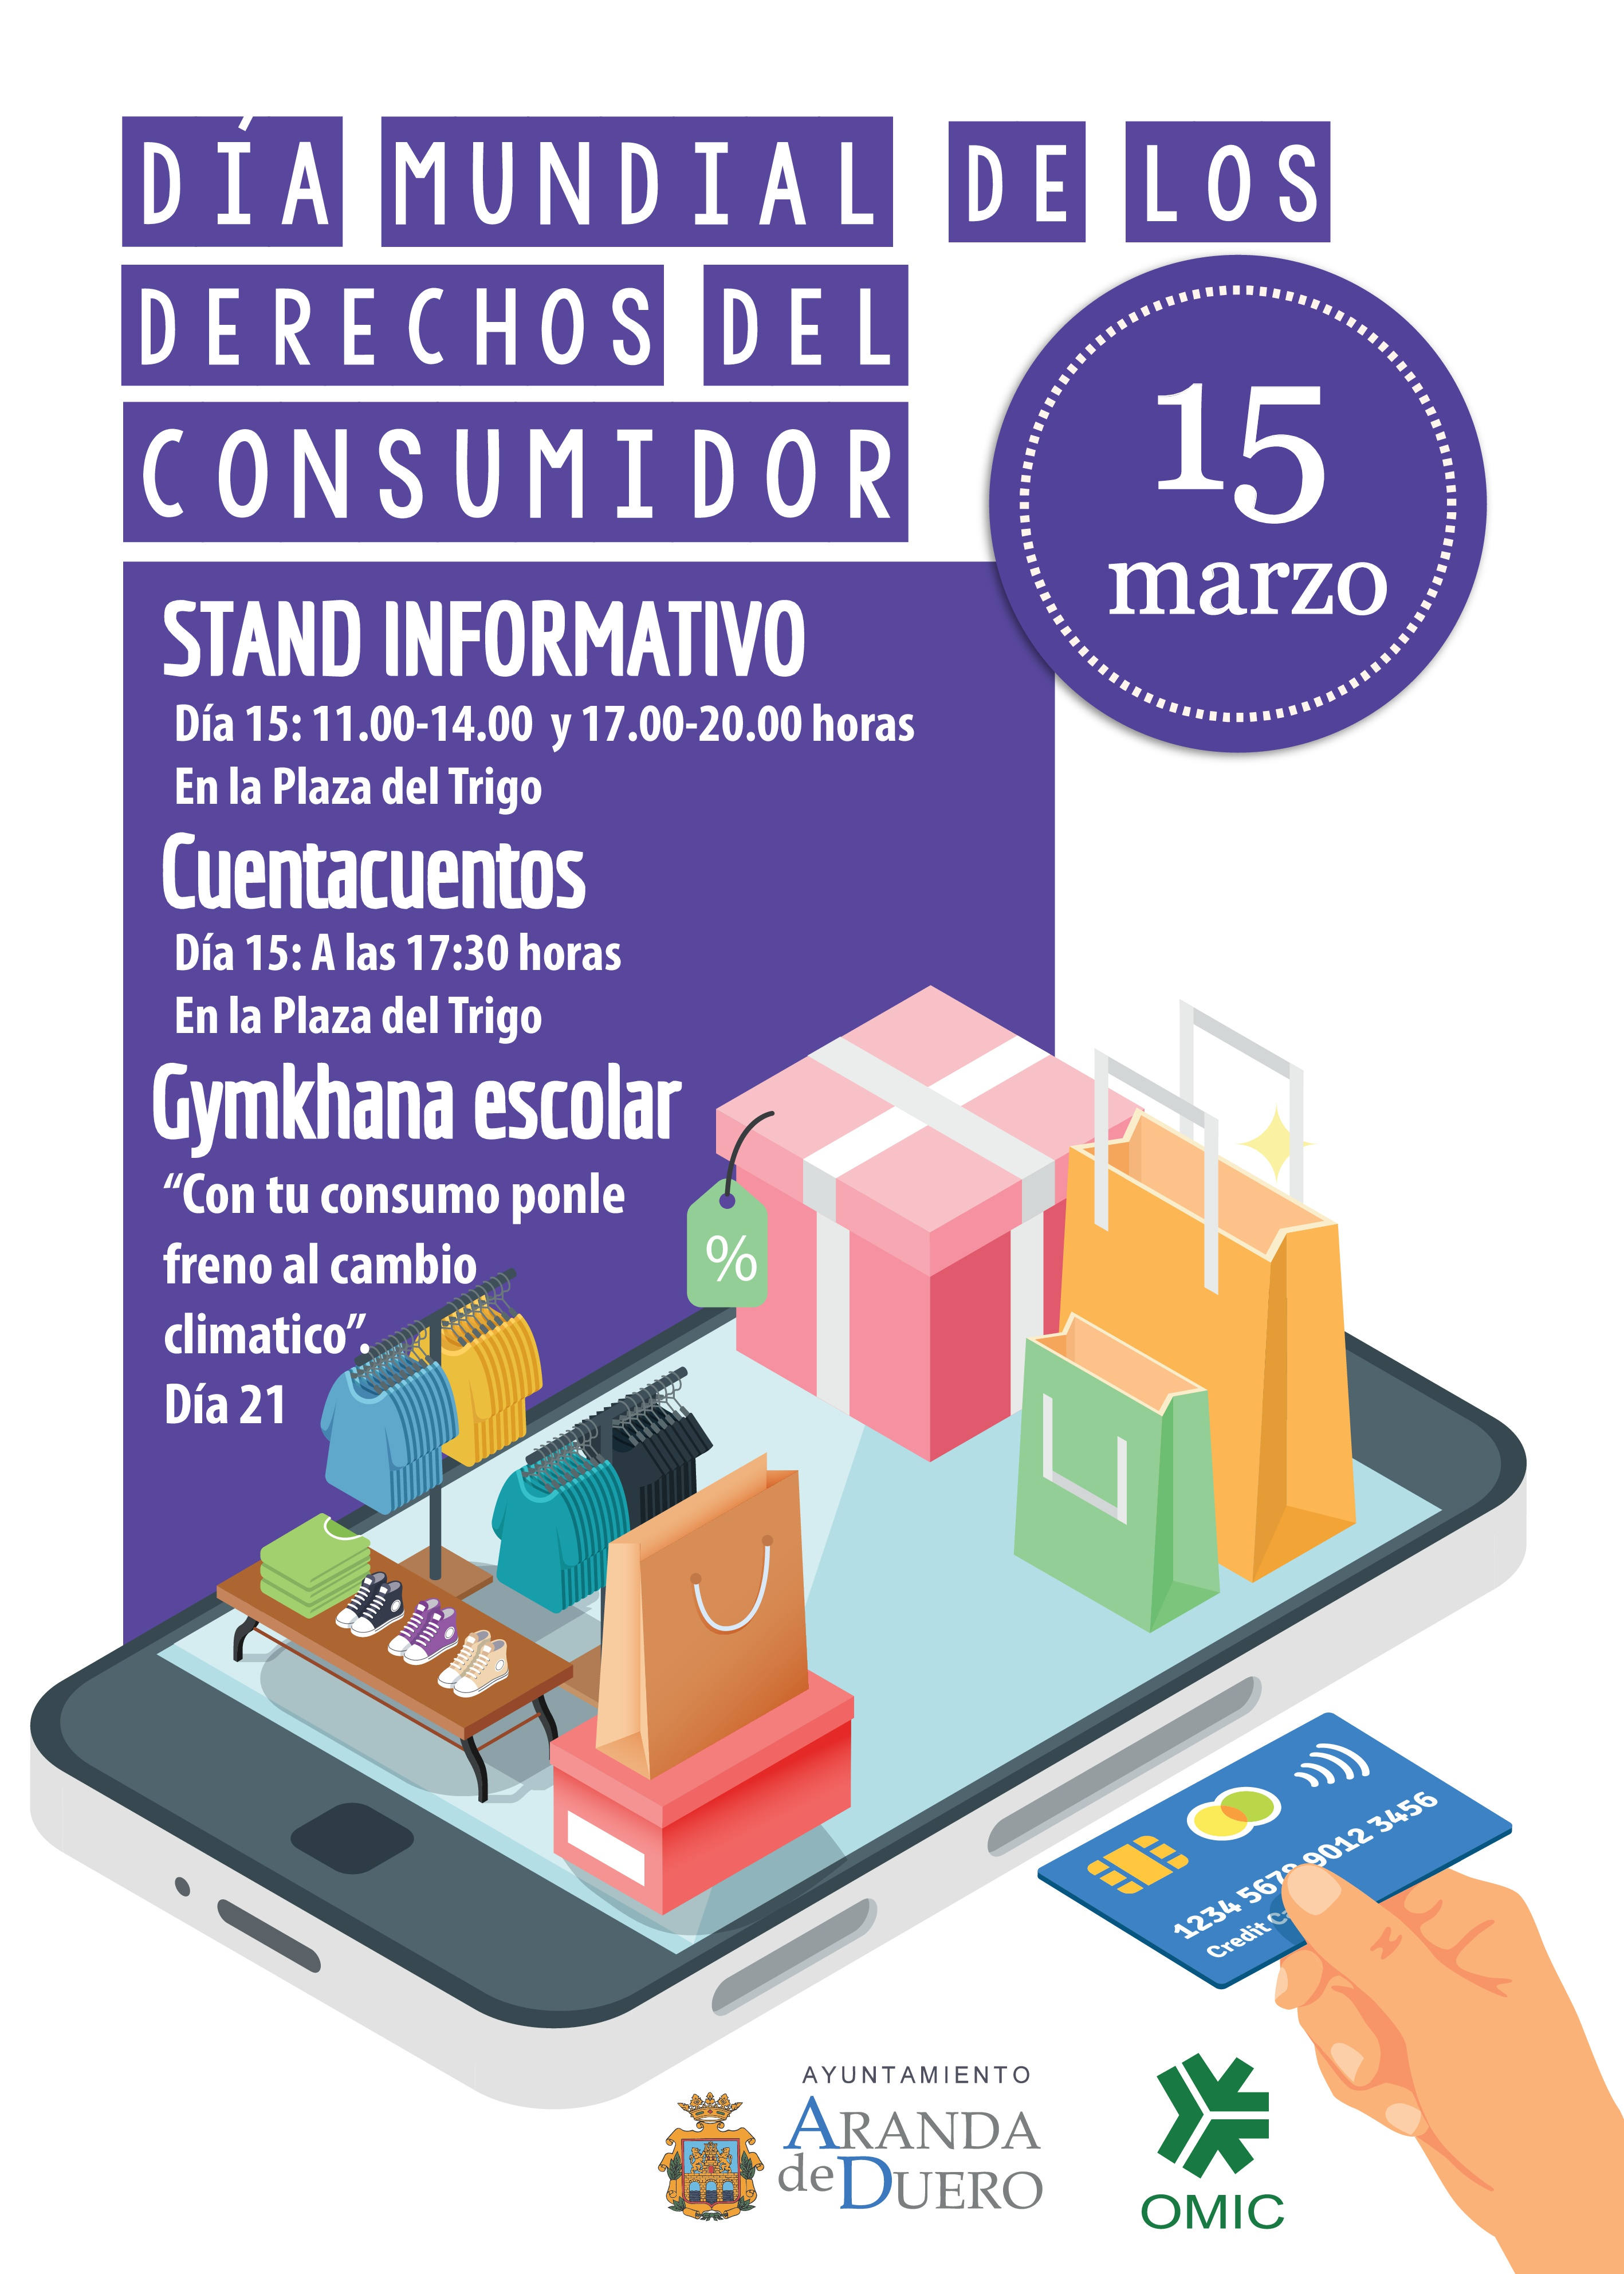 Cartel del día del consumidor 2018 con las actividades a realizar, detalladas en la noticia